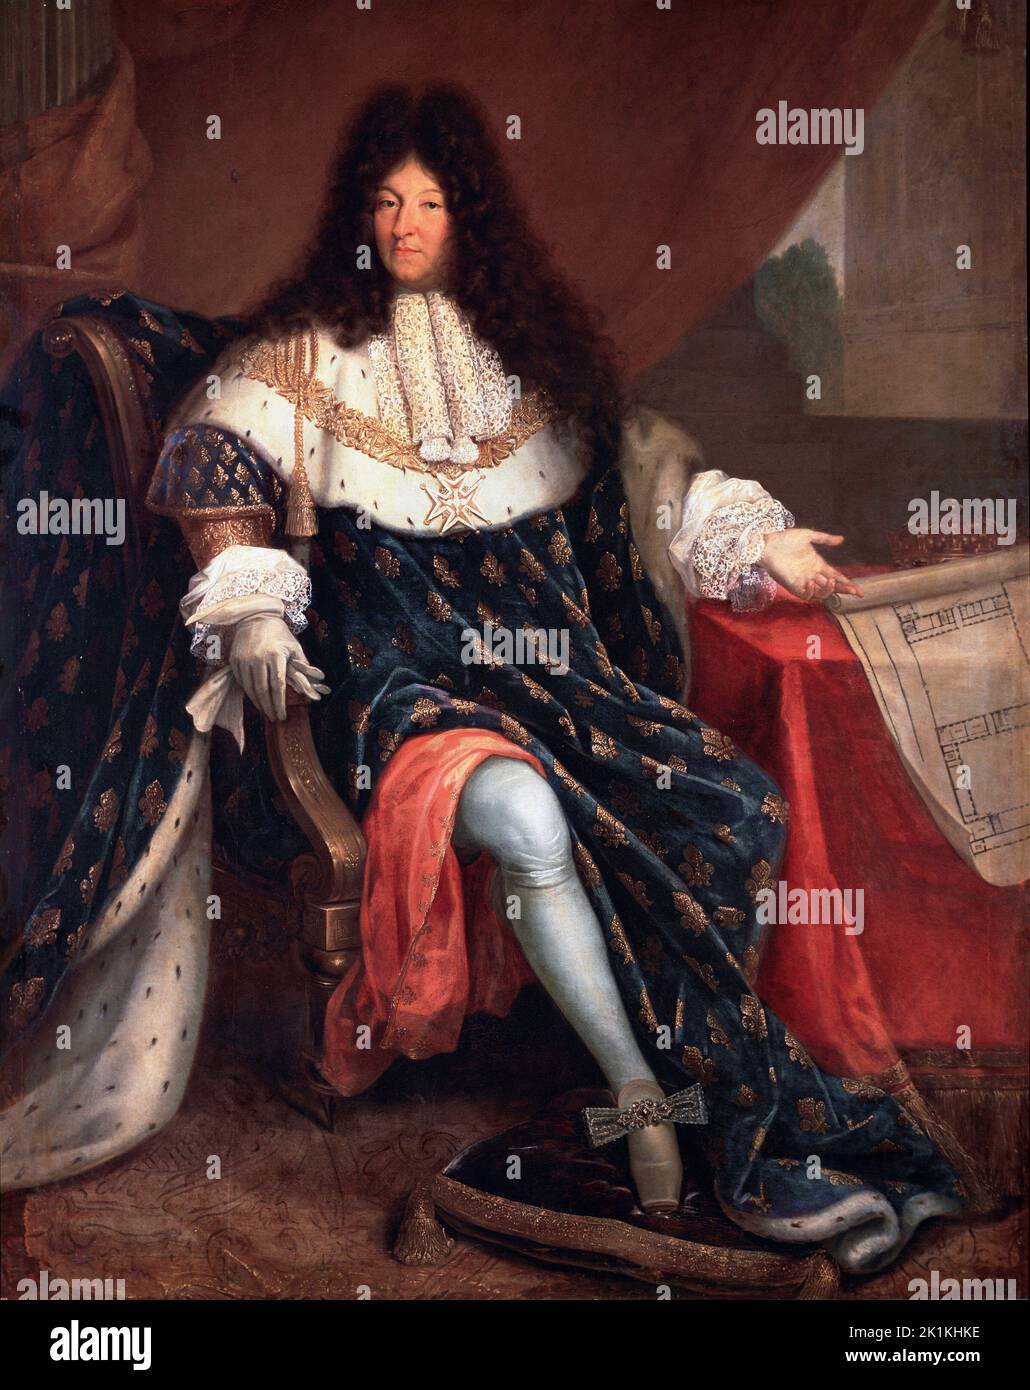 Portrait en pied de Louis XIV (1638-1715) Peinture de Nicolas Rene Jollain le Vieux, 17eme siecle. Huile sur toile. Versailles, Musee Du Chateau Stock Photo